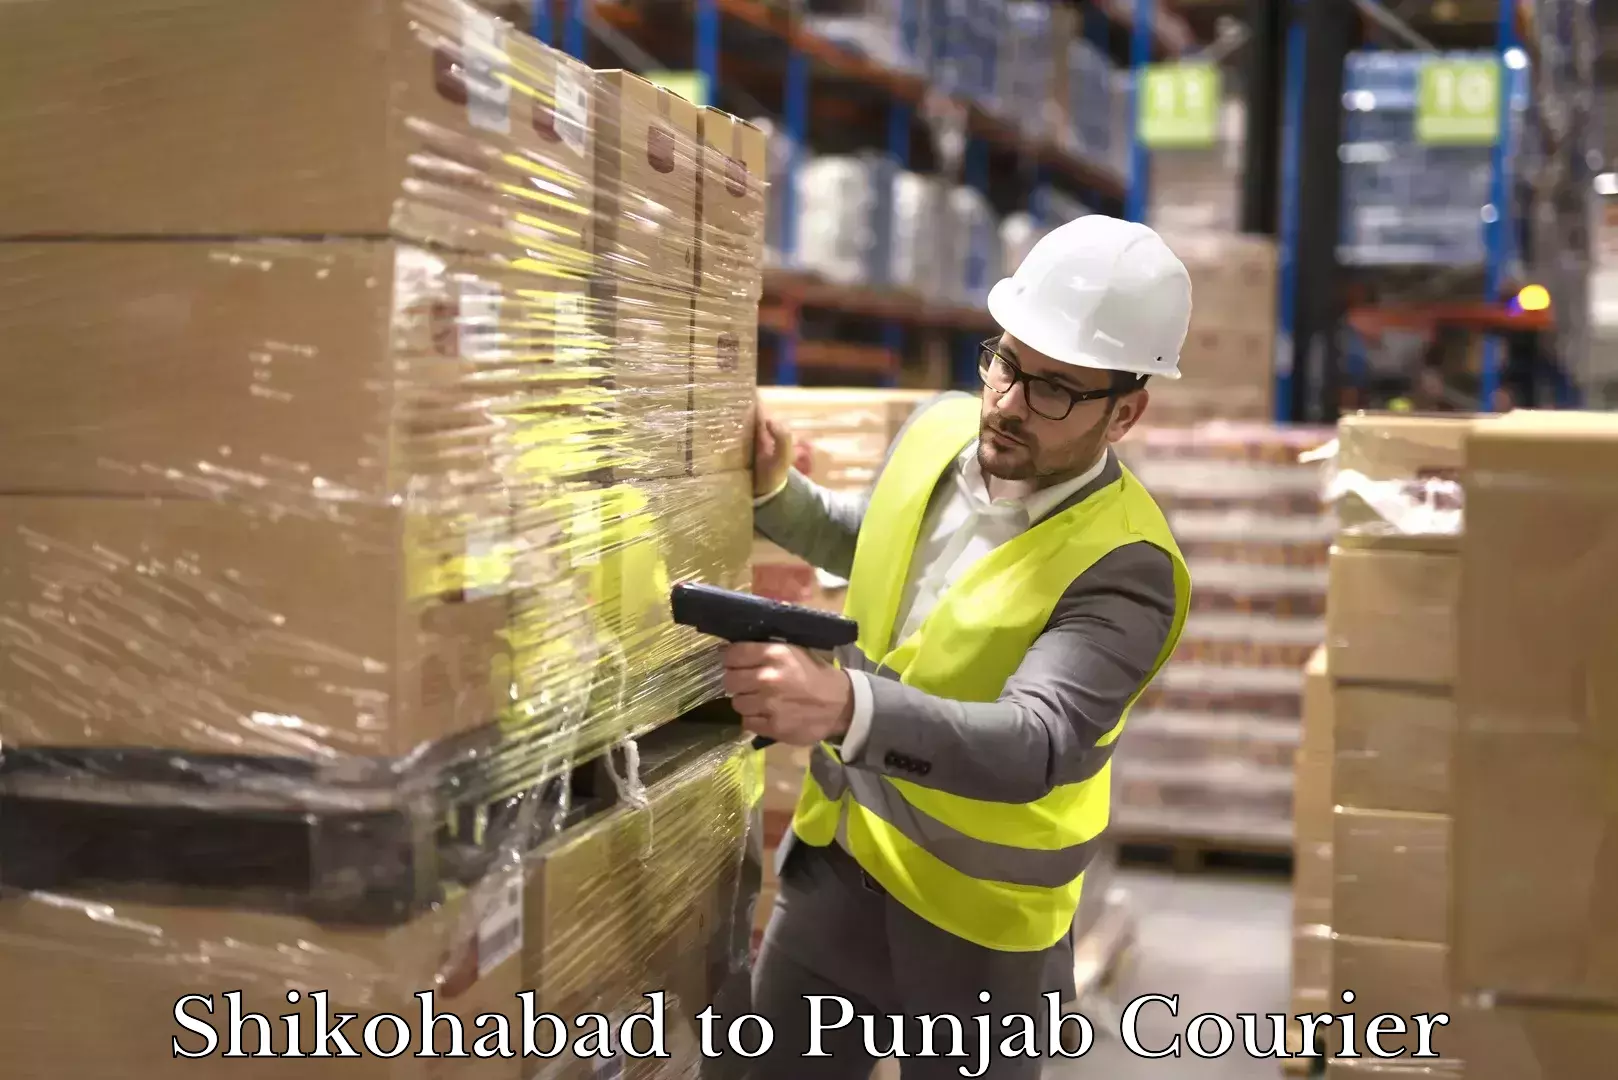 International parcel service Shikohabad to Punjab